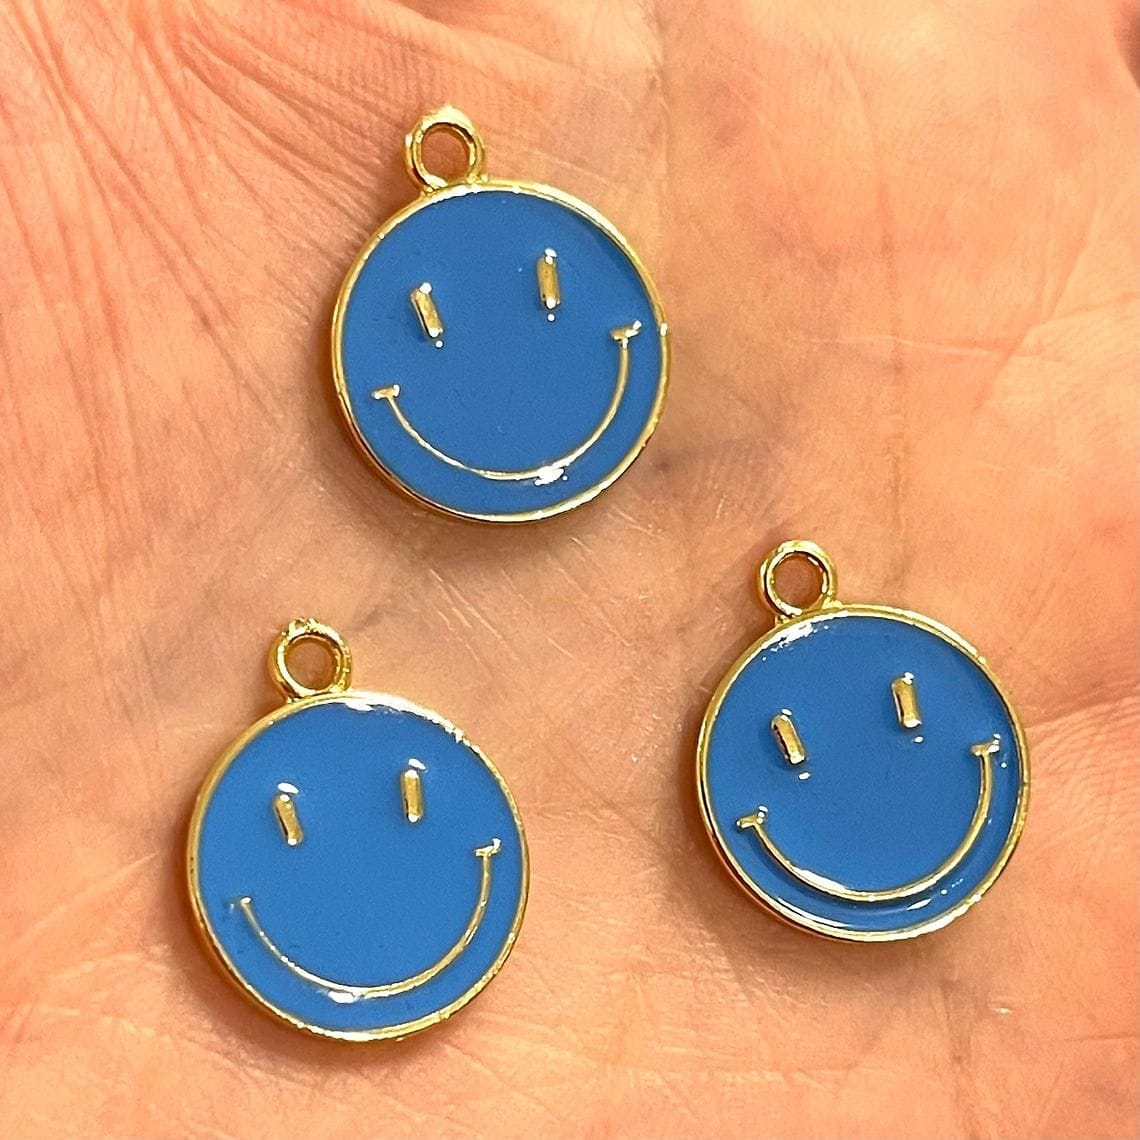 Vergoldetes Emaille-Smiley-Gesicht - Blau